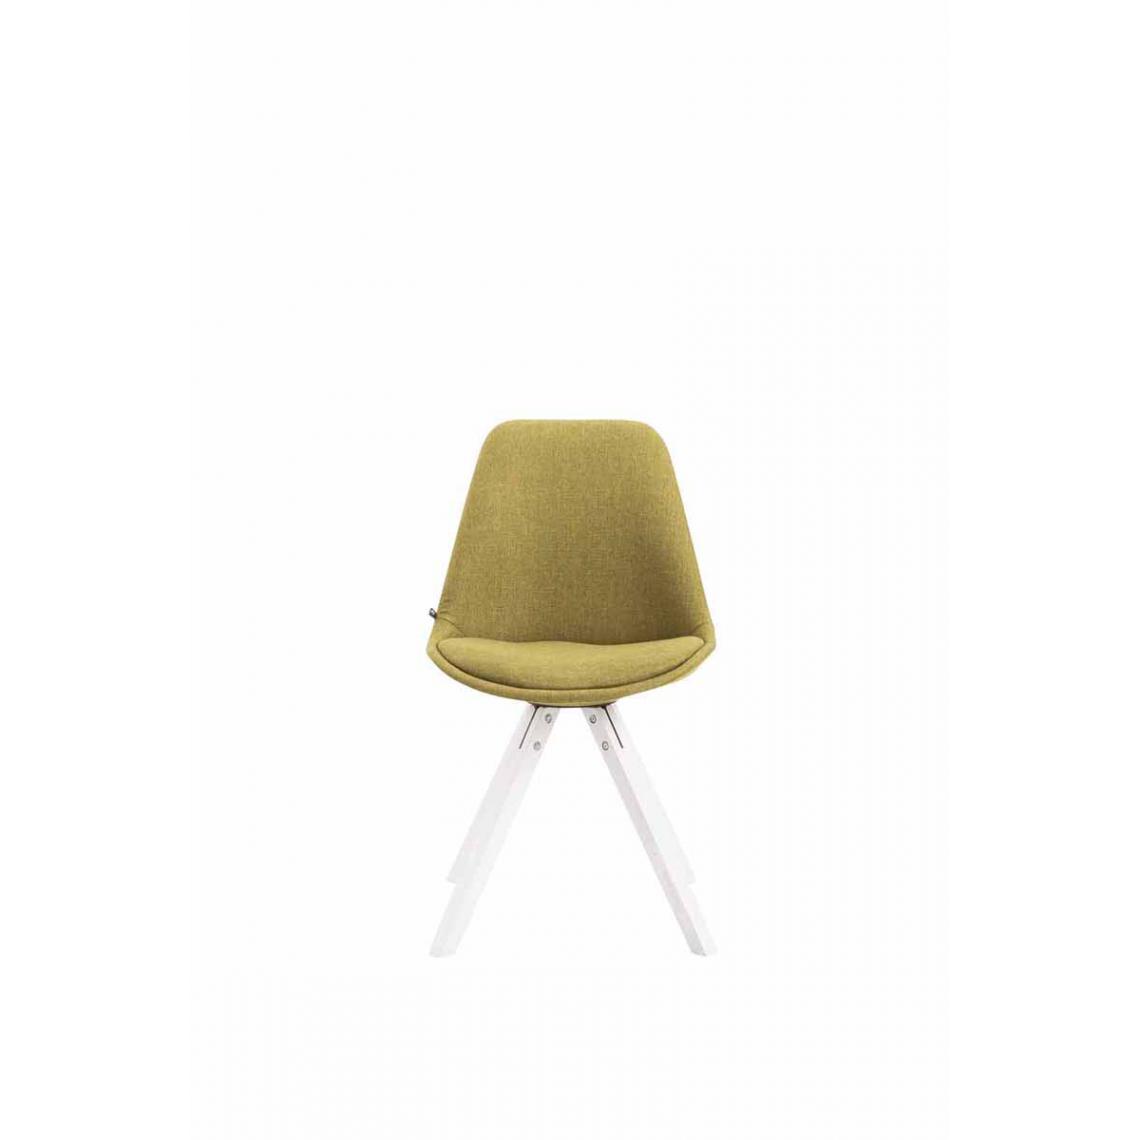 Icaverne - Superbe Chaise visiteur serie Katmandou tissu carré blanc couleur vert - Chaises